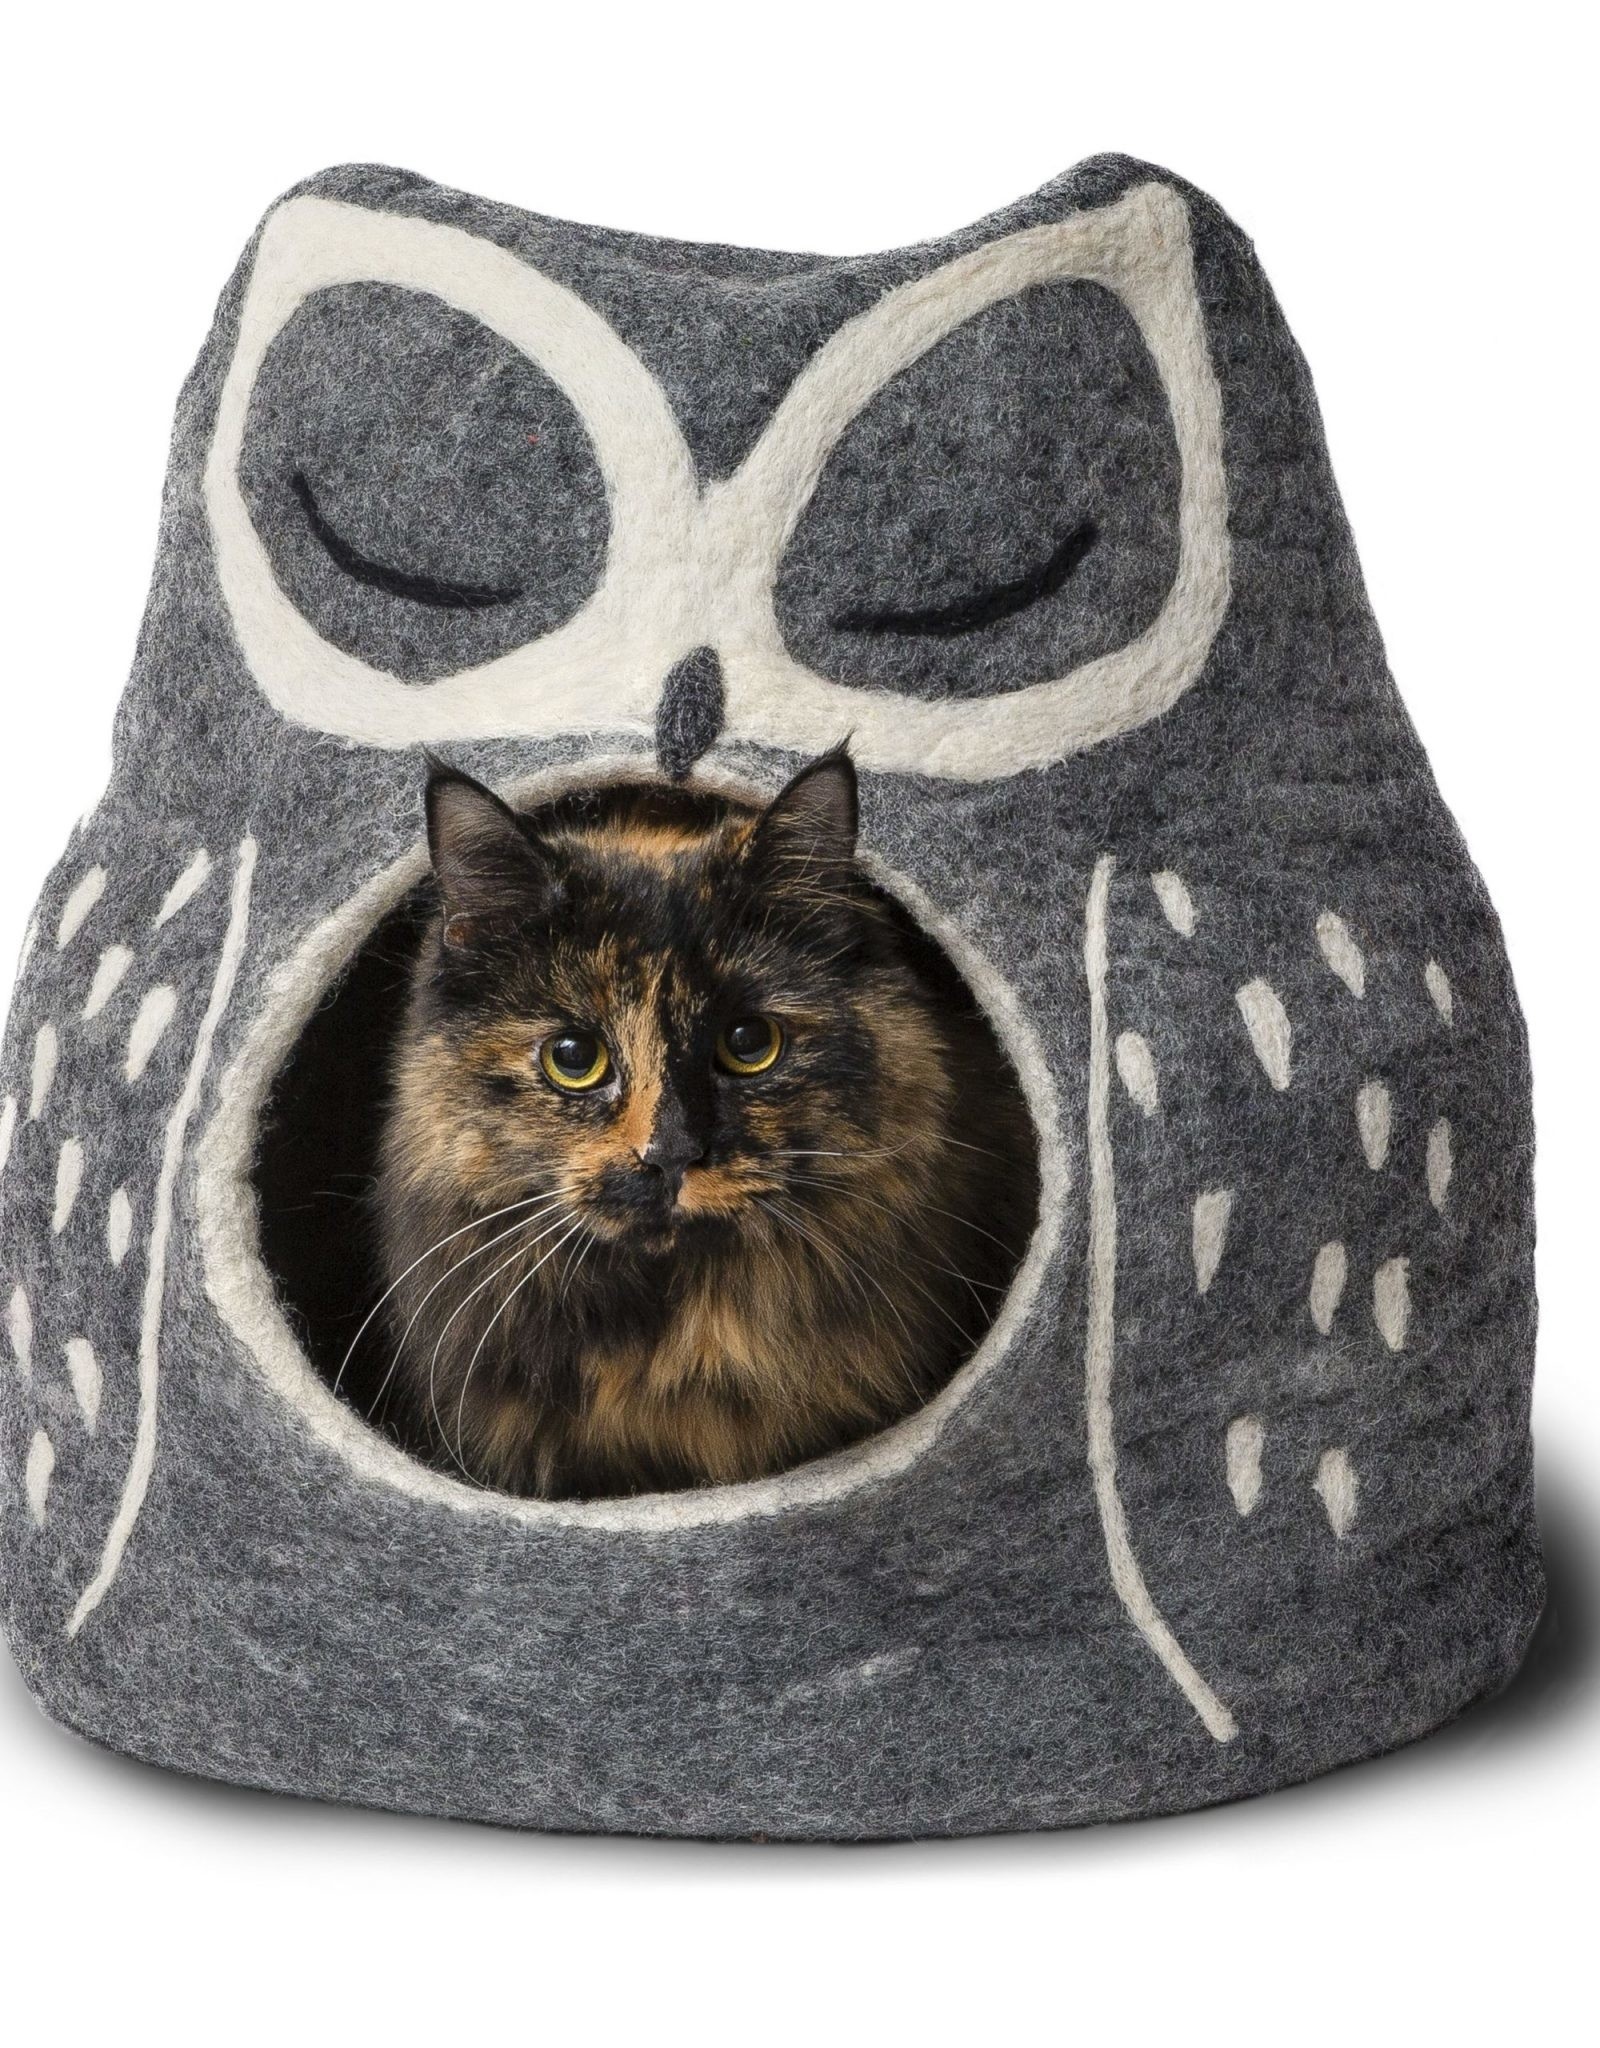 Dharma Dog Karma Cat Grey Owl Pet Cave